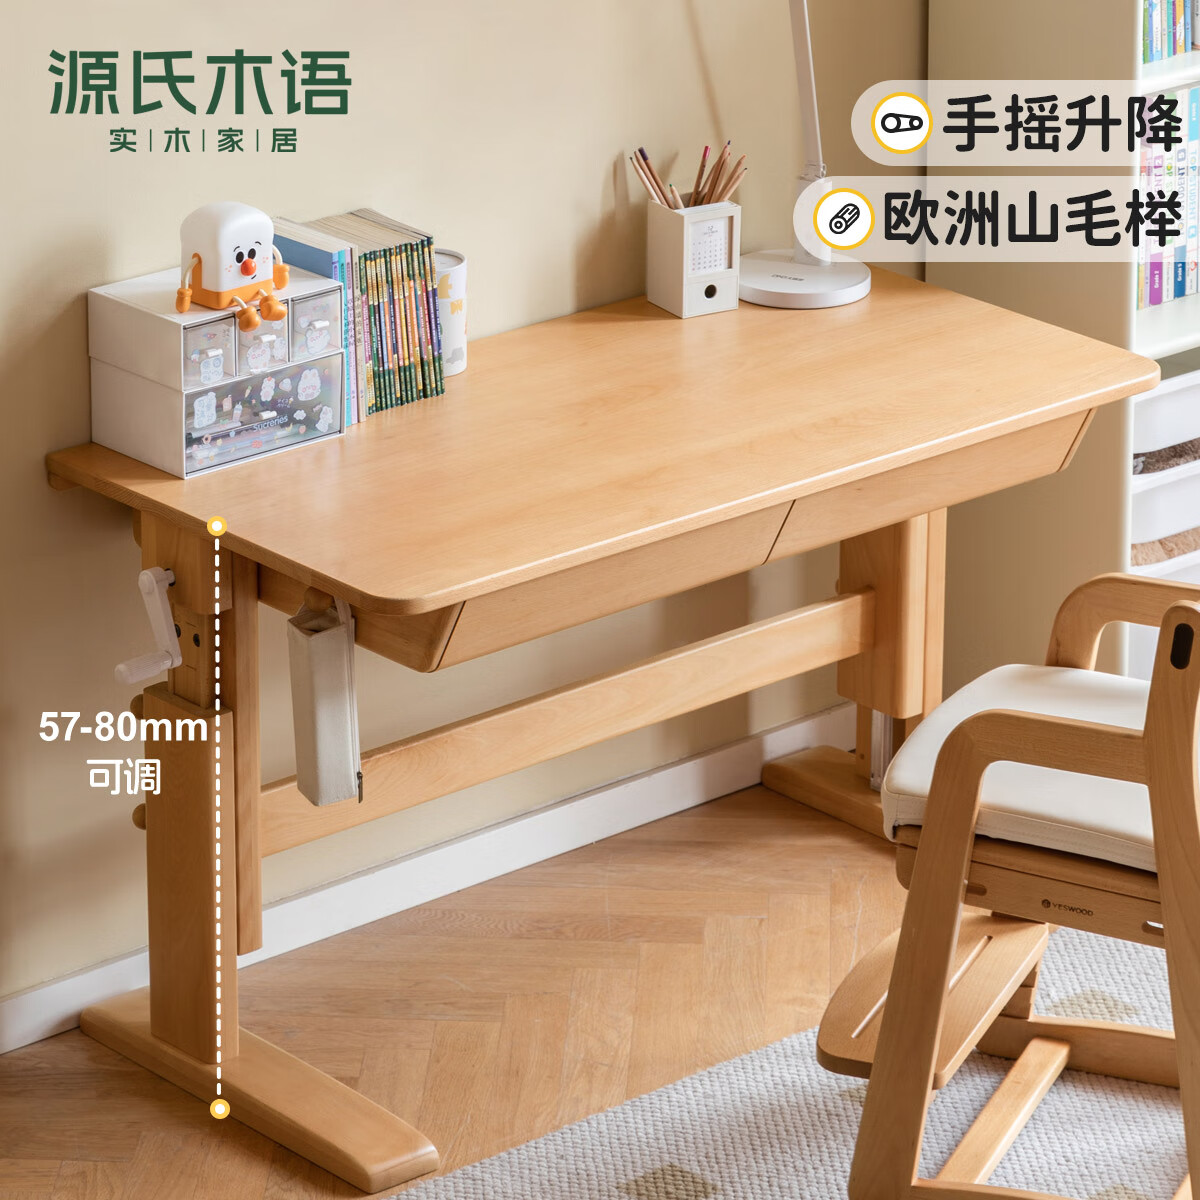 源氏木语实木学习桌手摇桌小课桌家用写字桌简约书桌 (进深60)1米学习桌+矮上架